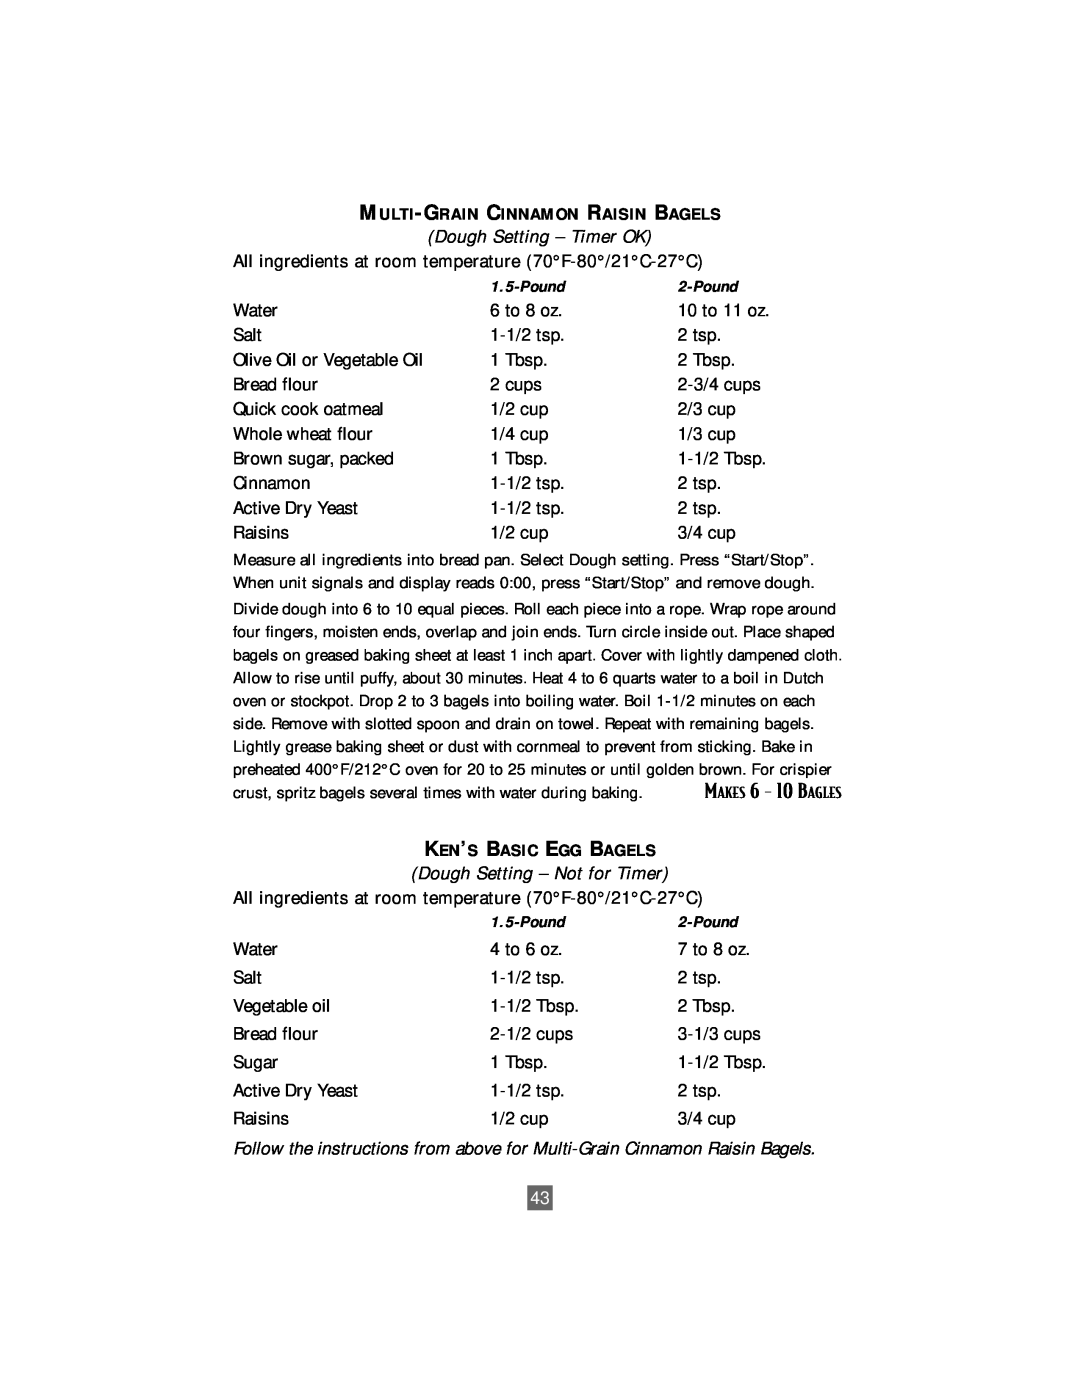 Oster P. N. 101017 manual Dough Setting - Timer OK, Multi-Grain Cinnamon Raisin Bagels, 3-1/3 cups 